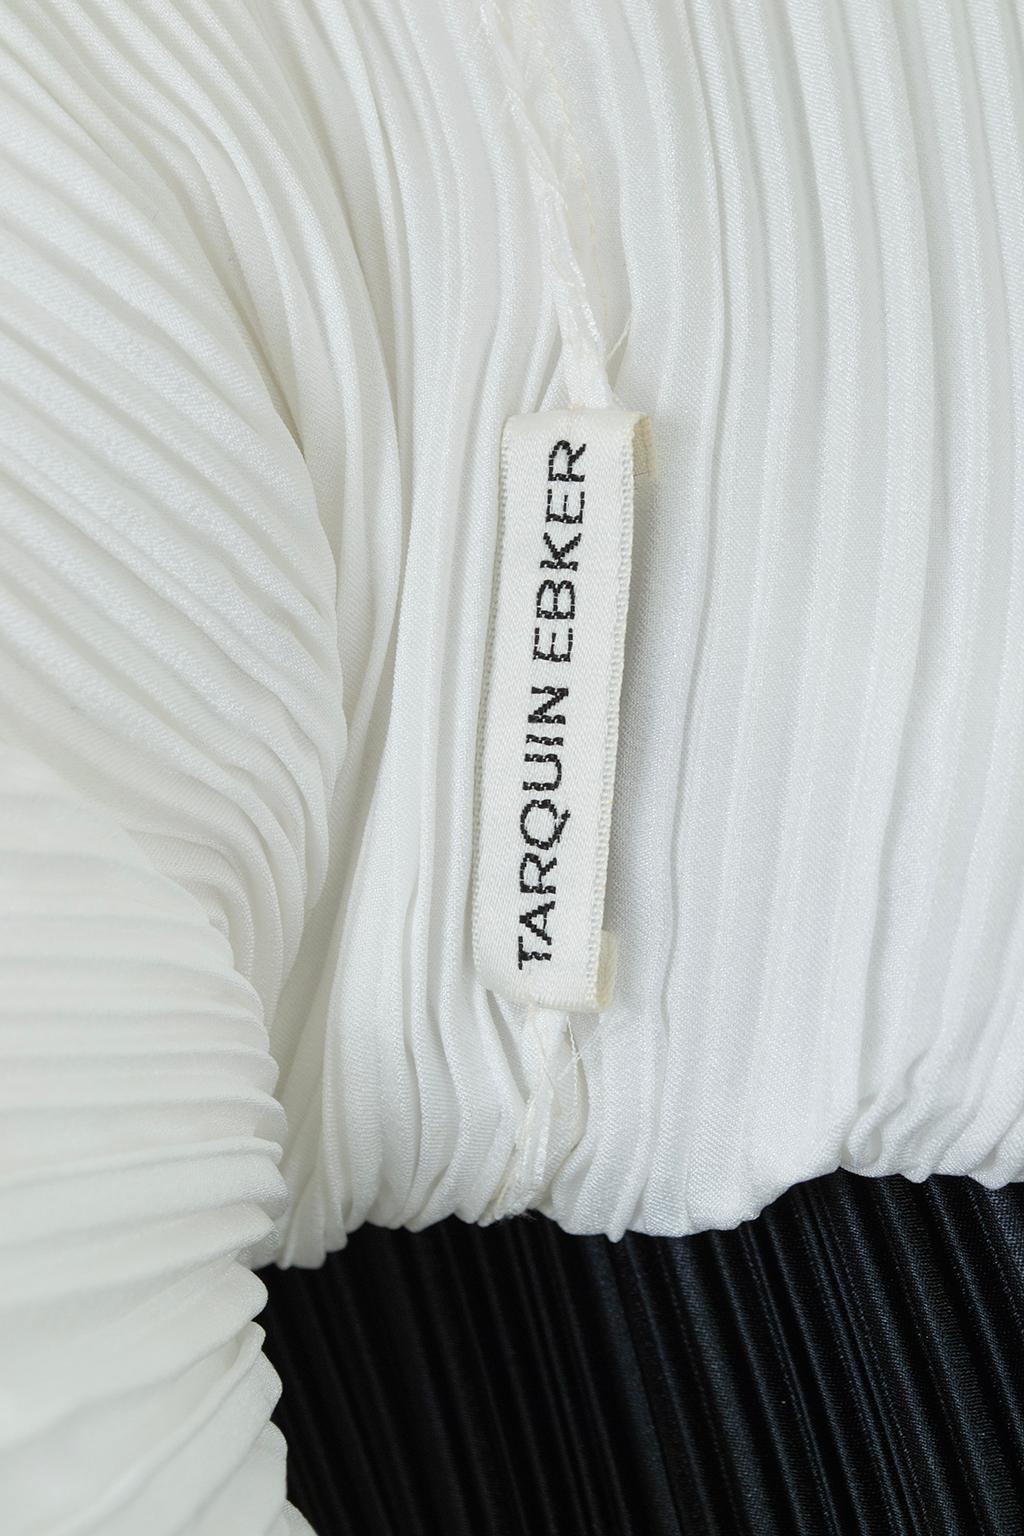 New Tarquin Ebker Black White Asymmetrical Delphos Dress w Provenance – S, 1978 For Sale 11